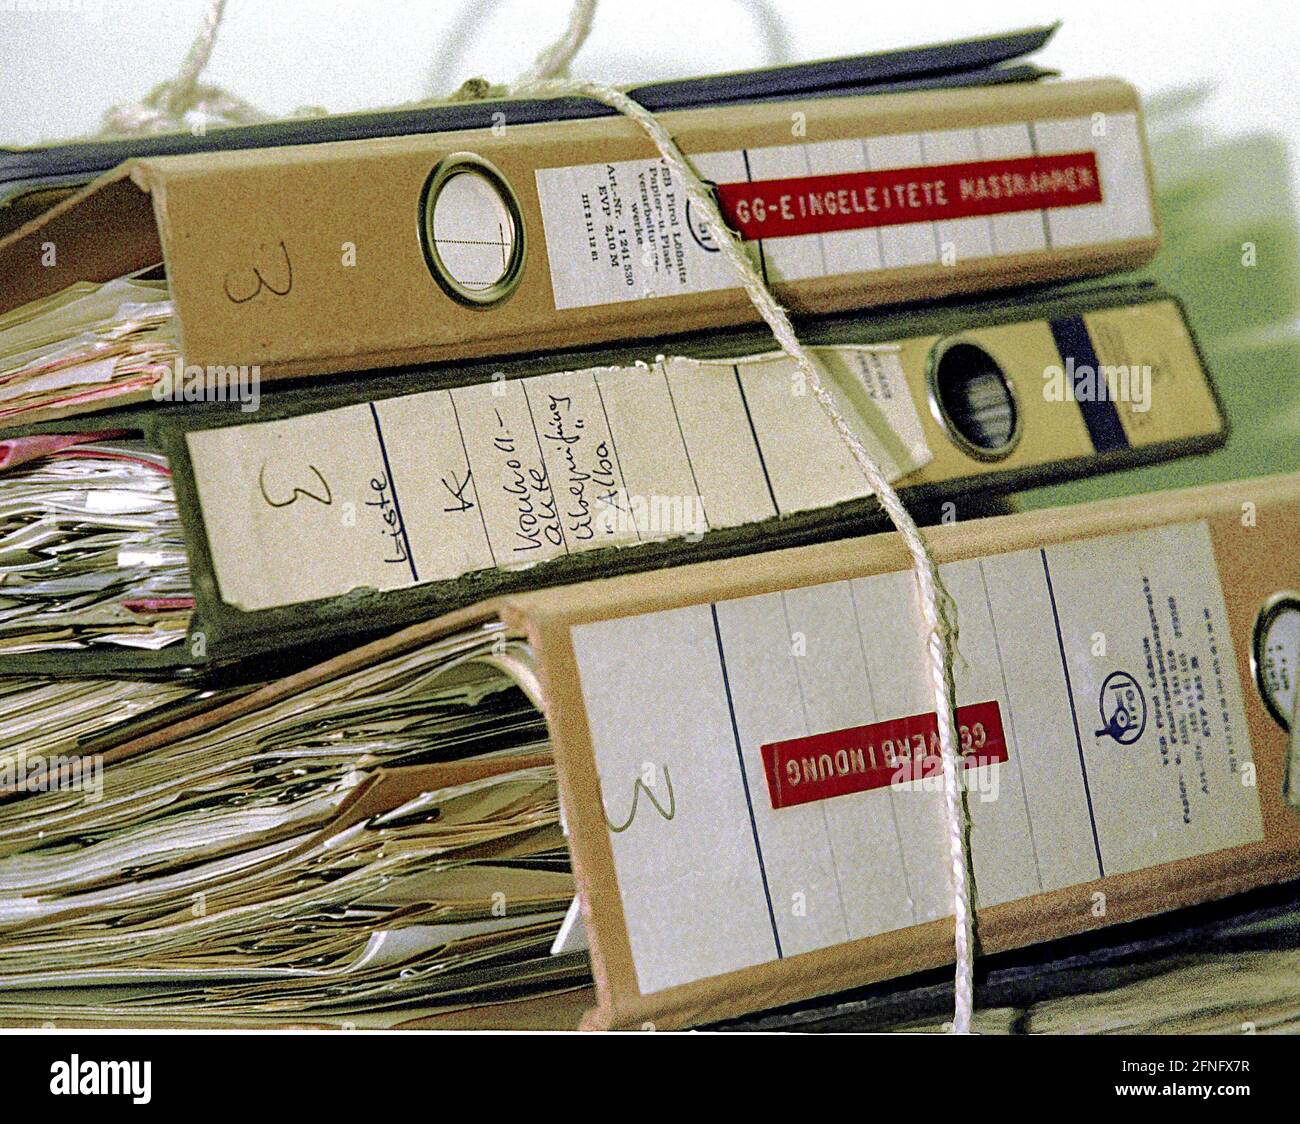 DDR / Staatssicherheit / 21.1.1992 Archivo del STASI en Normannenstrasse, archivos no catalogados en los índices de tarjetas. Los archivos de la Seguridad del Estado tienen varios kilómetros de largo. Se estima que // Vigilancia / Servicio Secreto / Estado / Archivos / Informers / Política de la RDA [traducción automática] Foto de stock